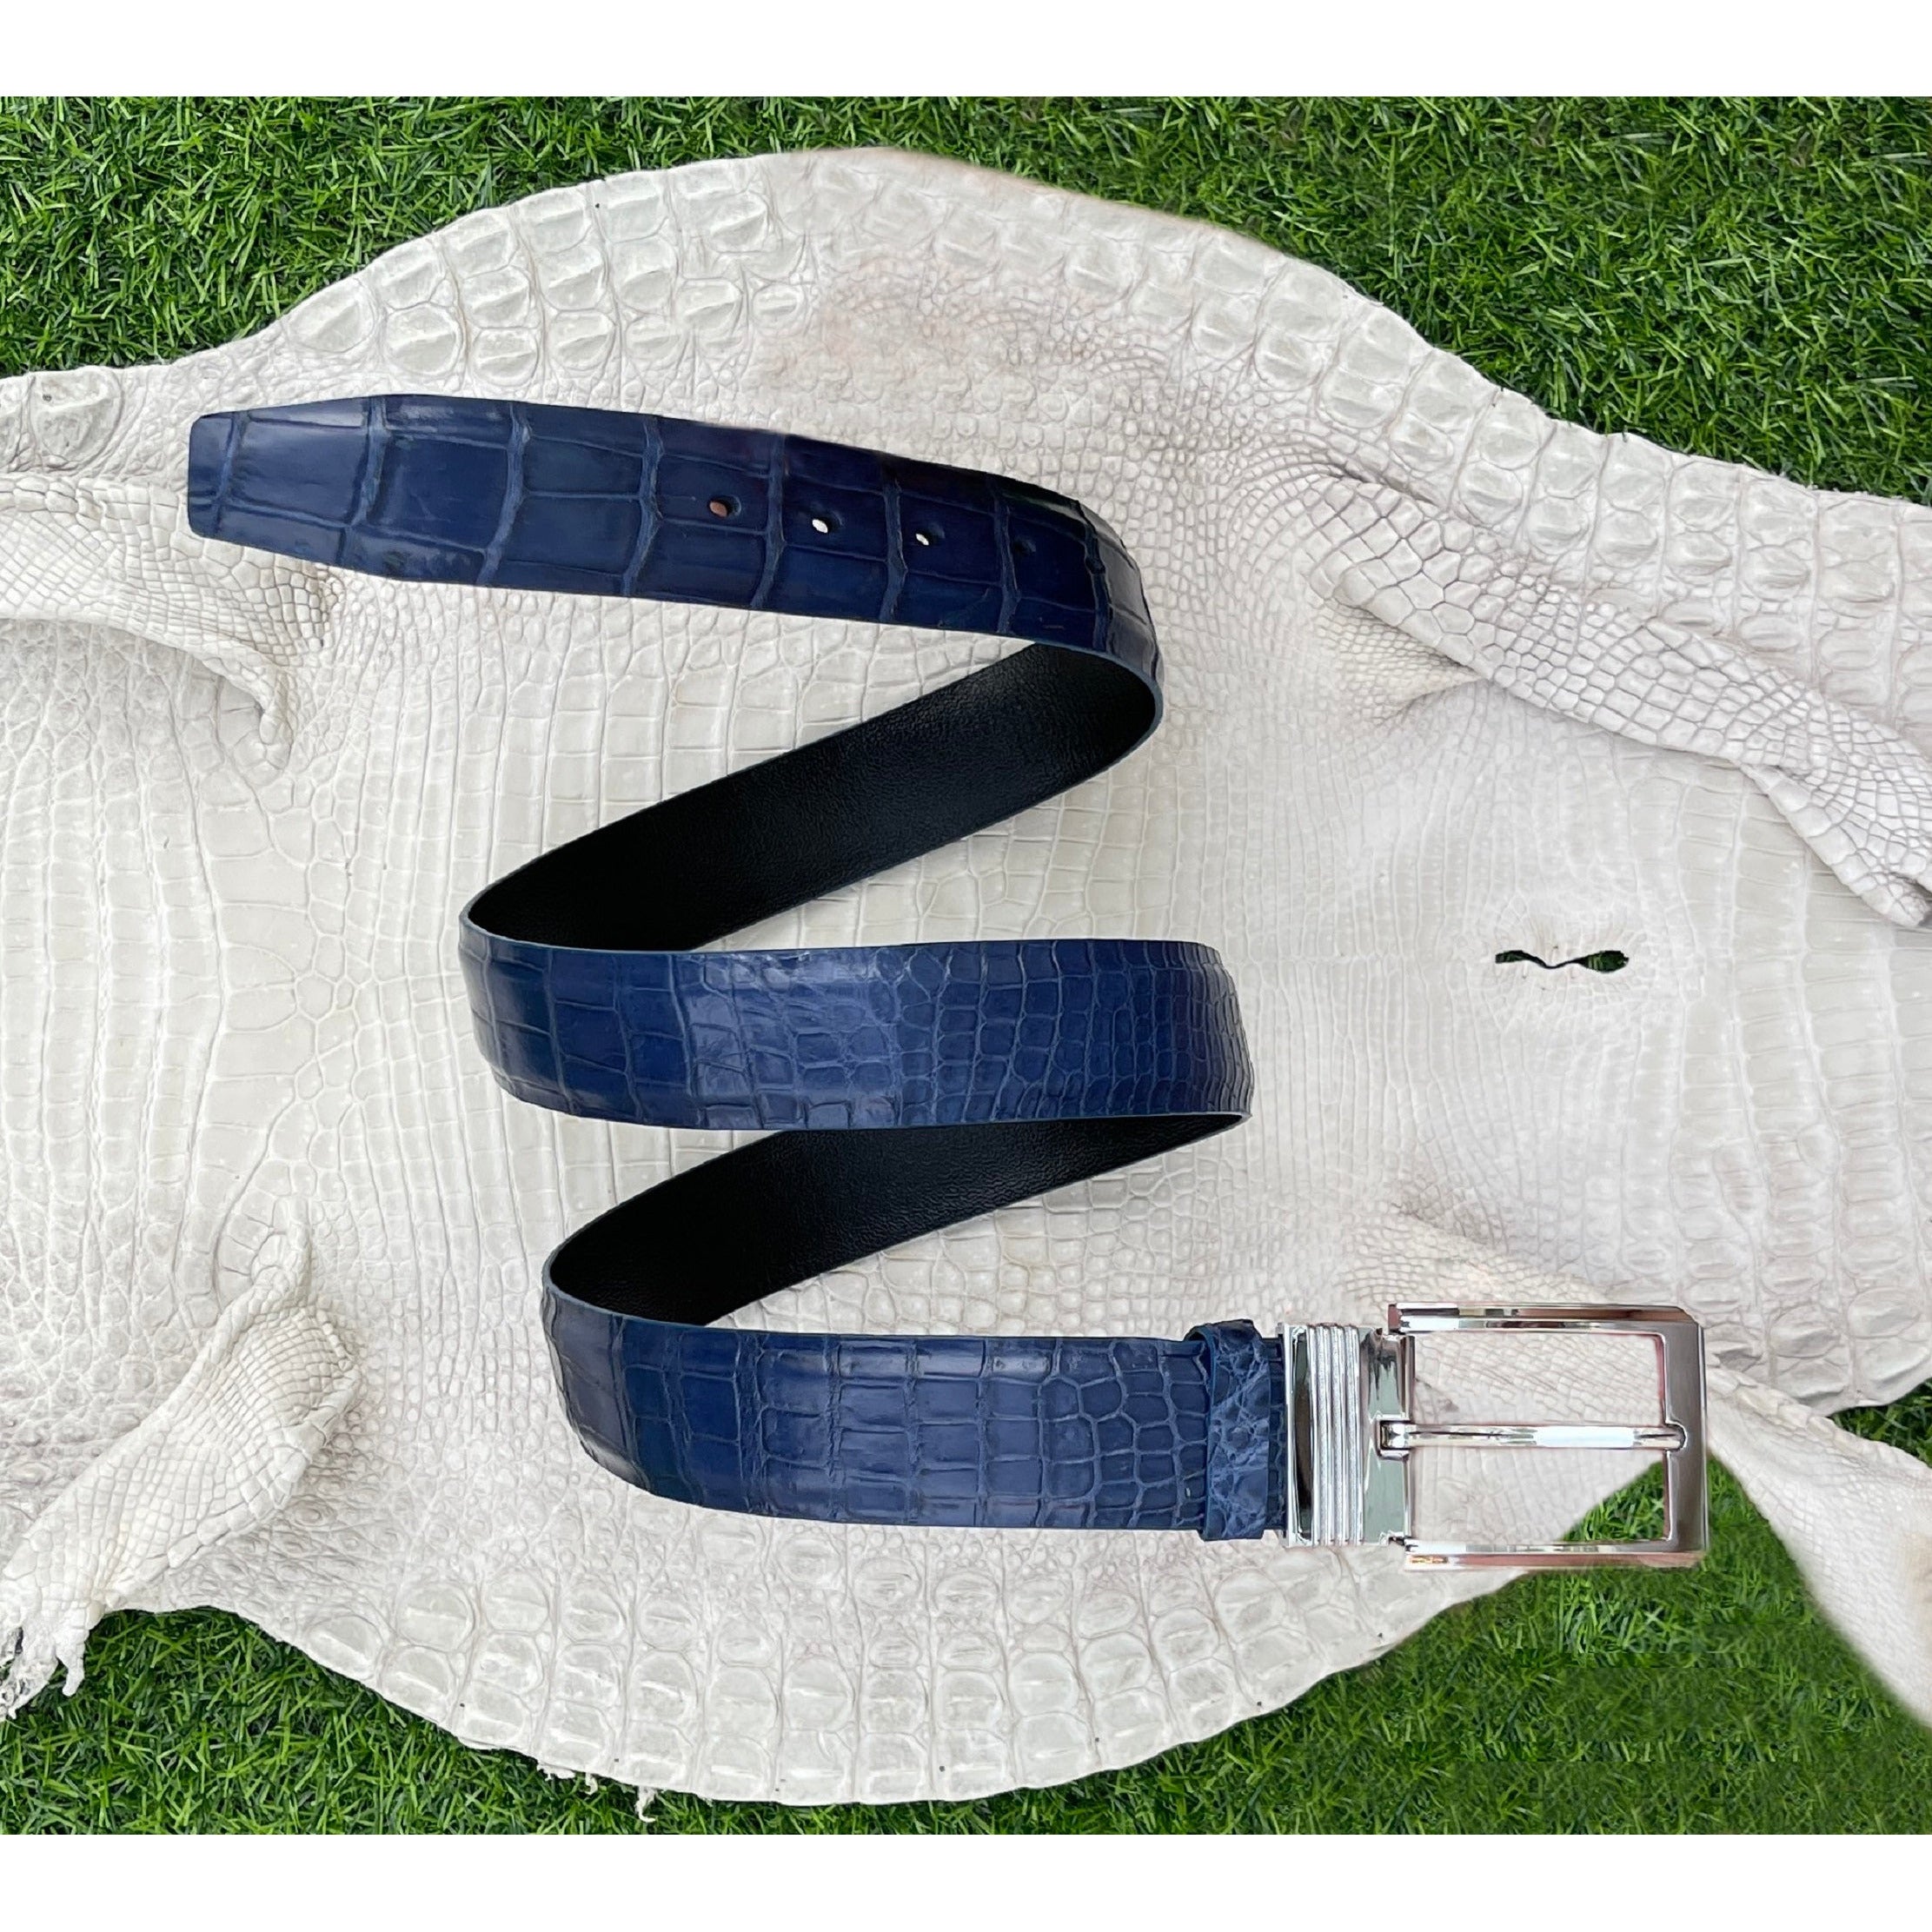 Crocodile Leather Belts Blue / Big & Gaint